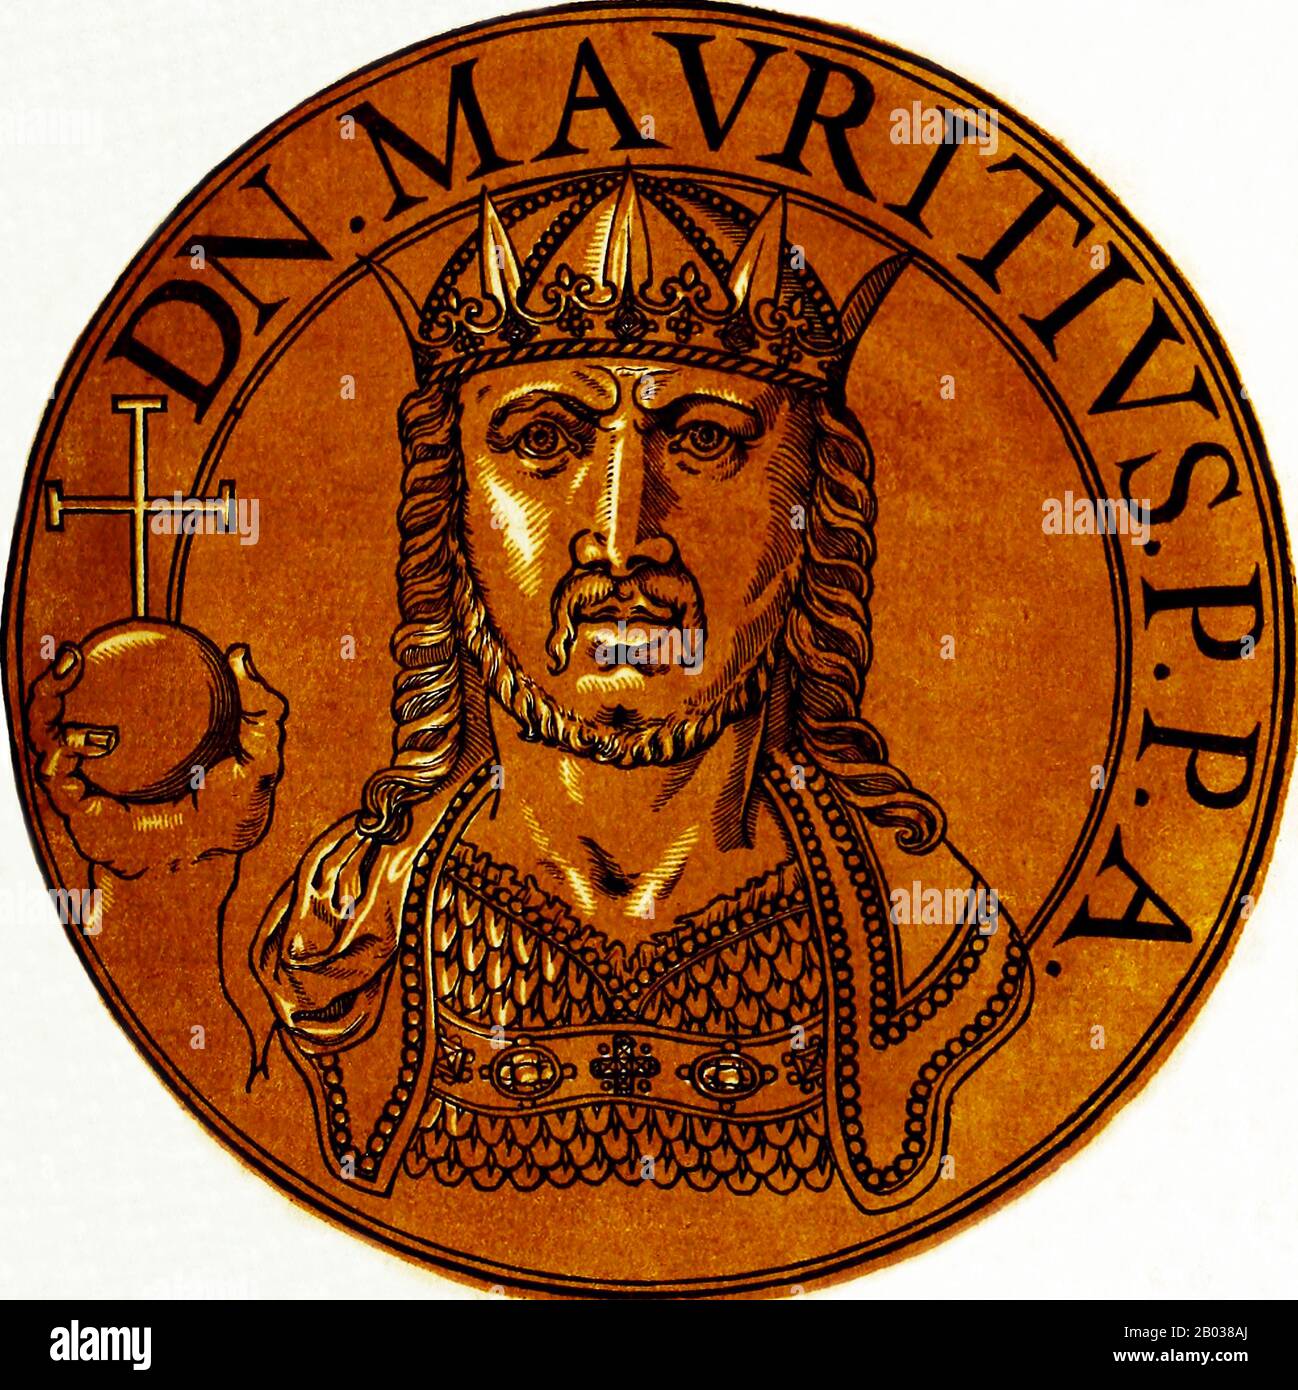 Maurice (539-602) wurde in Kappadokien geboren und stieg in seiner Jugend schnell zu einem prominenten General auf, mit zahlreichen erfolgen unter seinem Gürtel aus dem Wahlkampf gegen das Sassanidenreich. Er heiratete Constantina, die Tochter von Kaiser Tiberius II., und trat 582 die Nachfolge seines Schwiegervaters als Kaiser an, wobei er eine tumultartige Situation zahlreicher kriegerischer Fronten und hoher Tribute an Avar-Barbaren erbt hatte. Maurice brachte den Krieg gegen die Sassaniden schnell zu einem siegreichen Abschluss und baute die Ostgrenze des Frankenreiches im Kaukasus enorm aus. Er drängte die Avare über die Donau i zurück Stockfoto